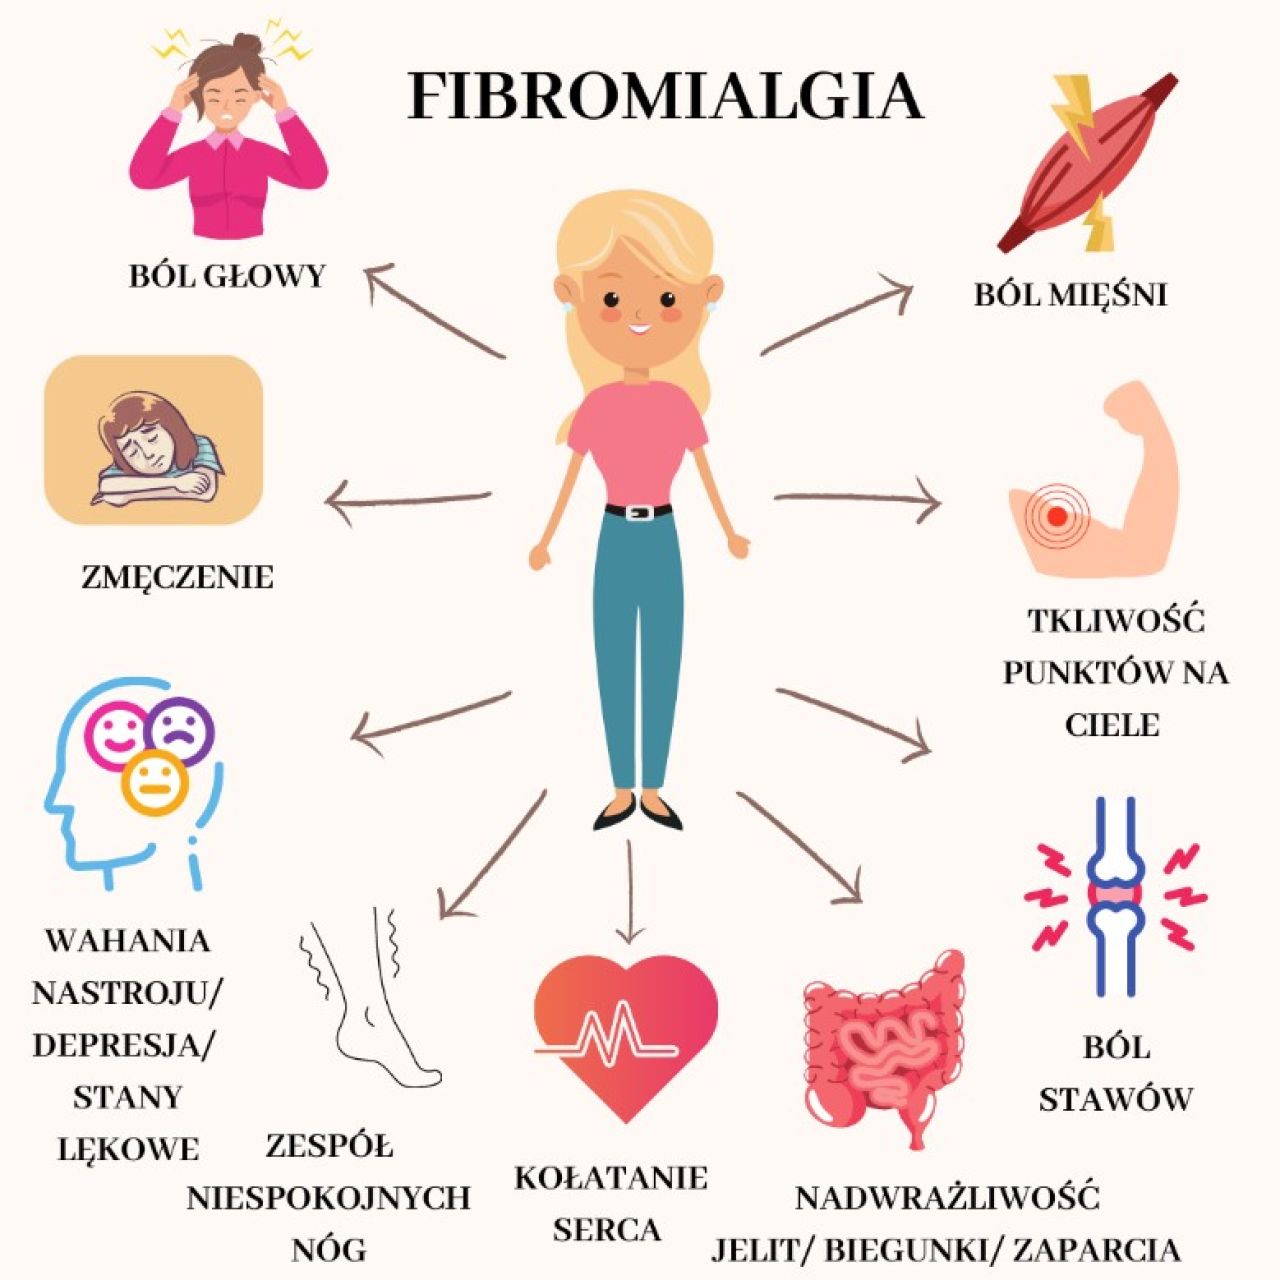 Fibromialgia - choroba, o której należy głośno mówić